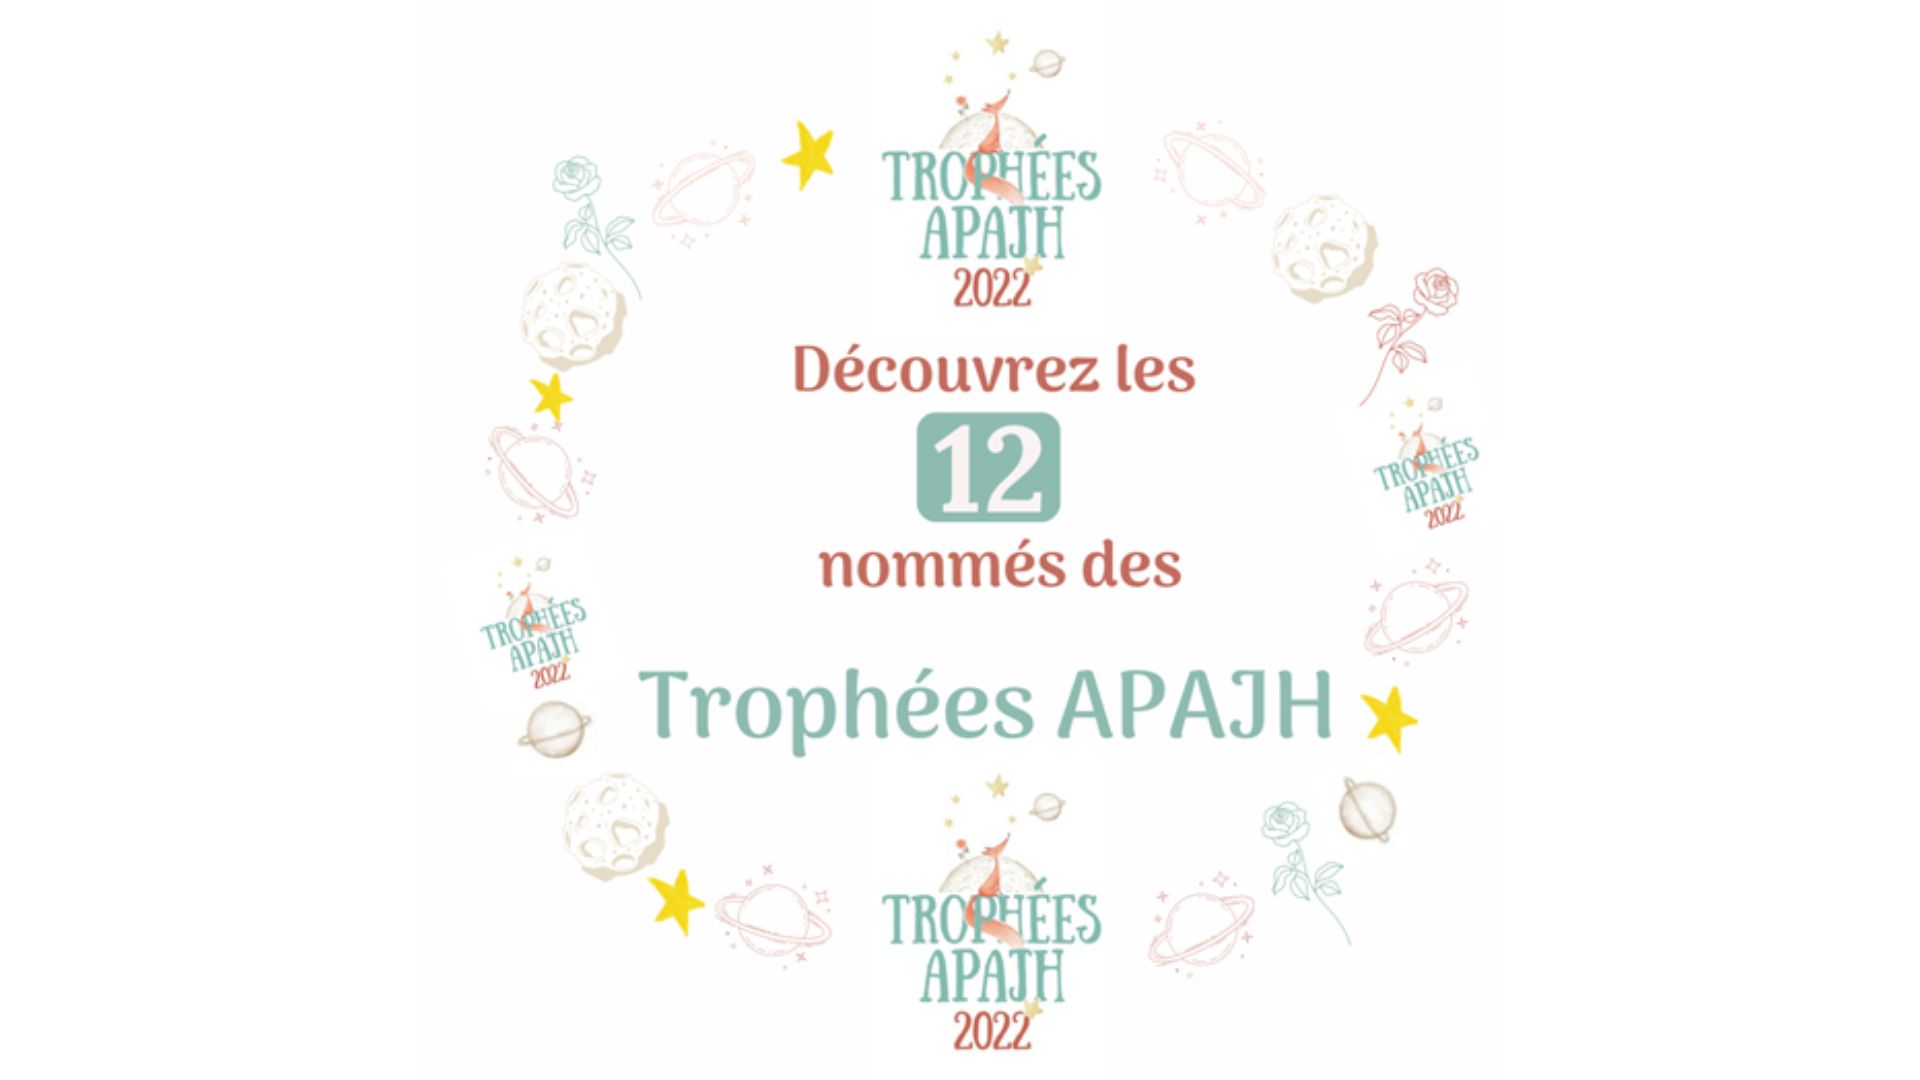 Visuel avec le logo des Trophées APAJH et le texte Découvrez les 12 nommés des Trophées APAJH 2022